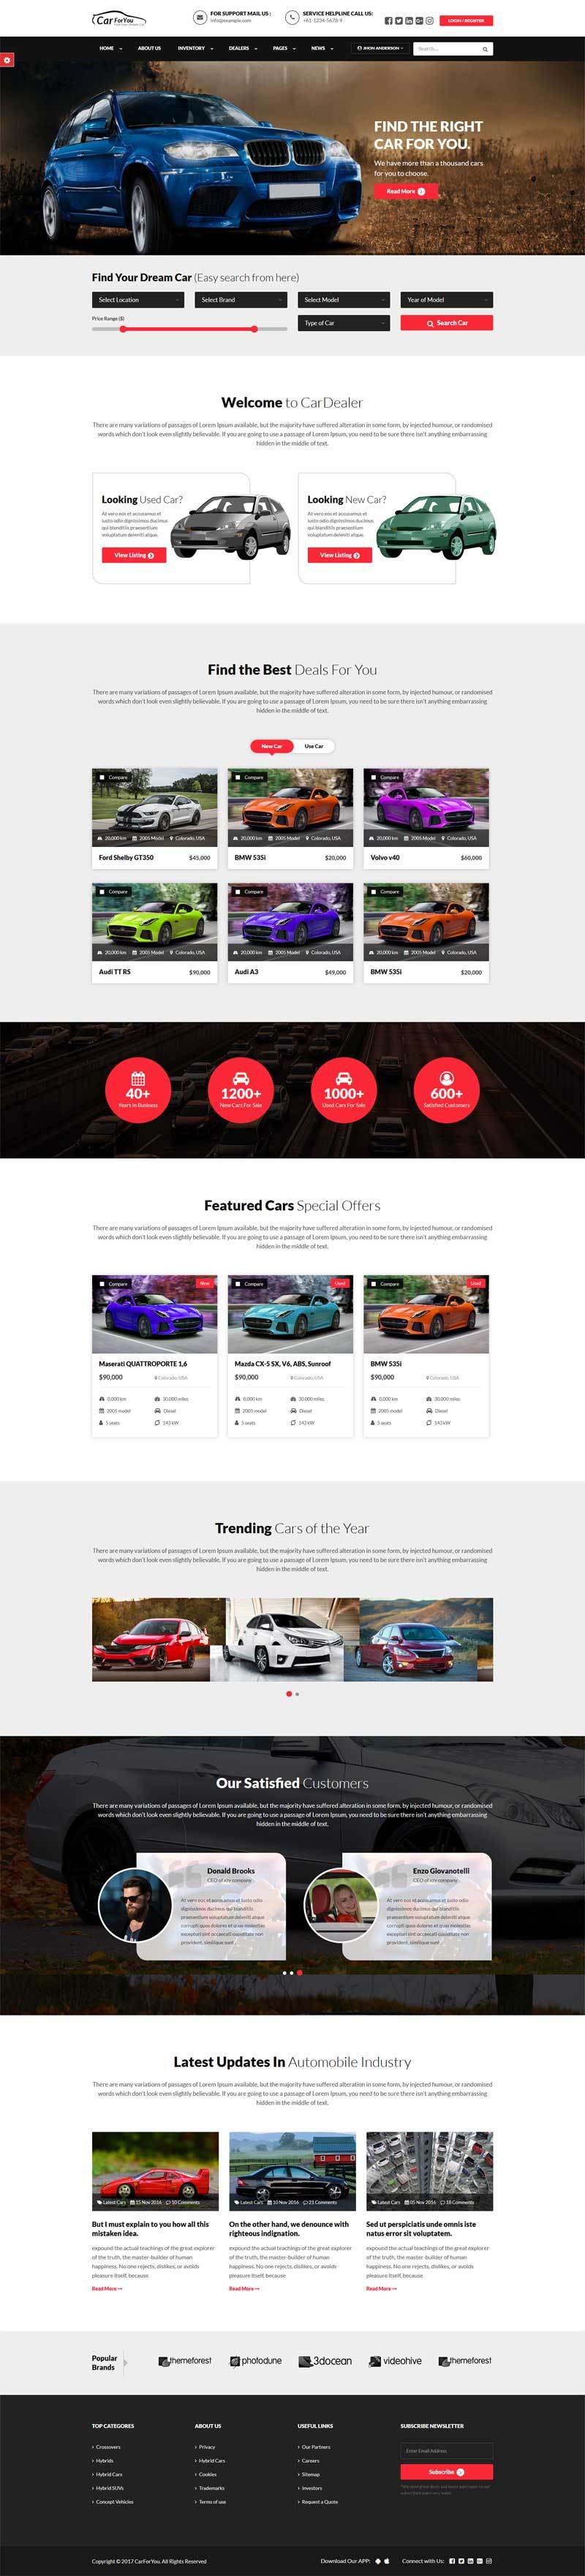 响应式的汽车经销商销售平台网站模板